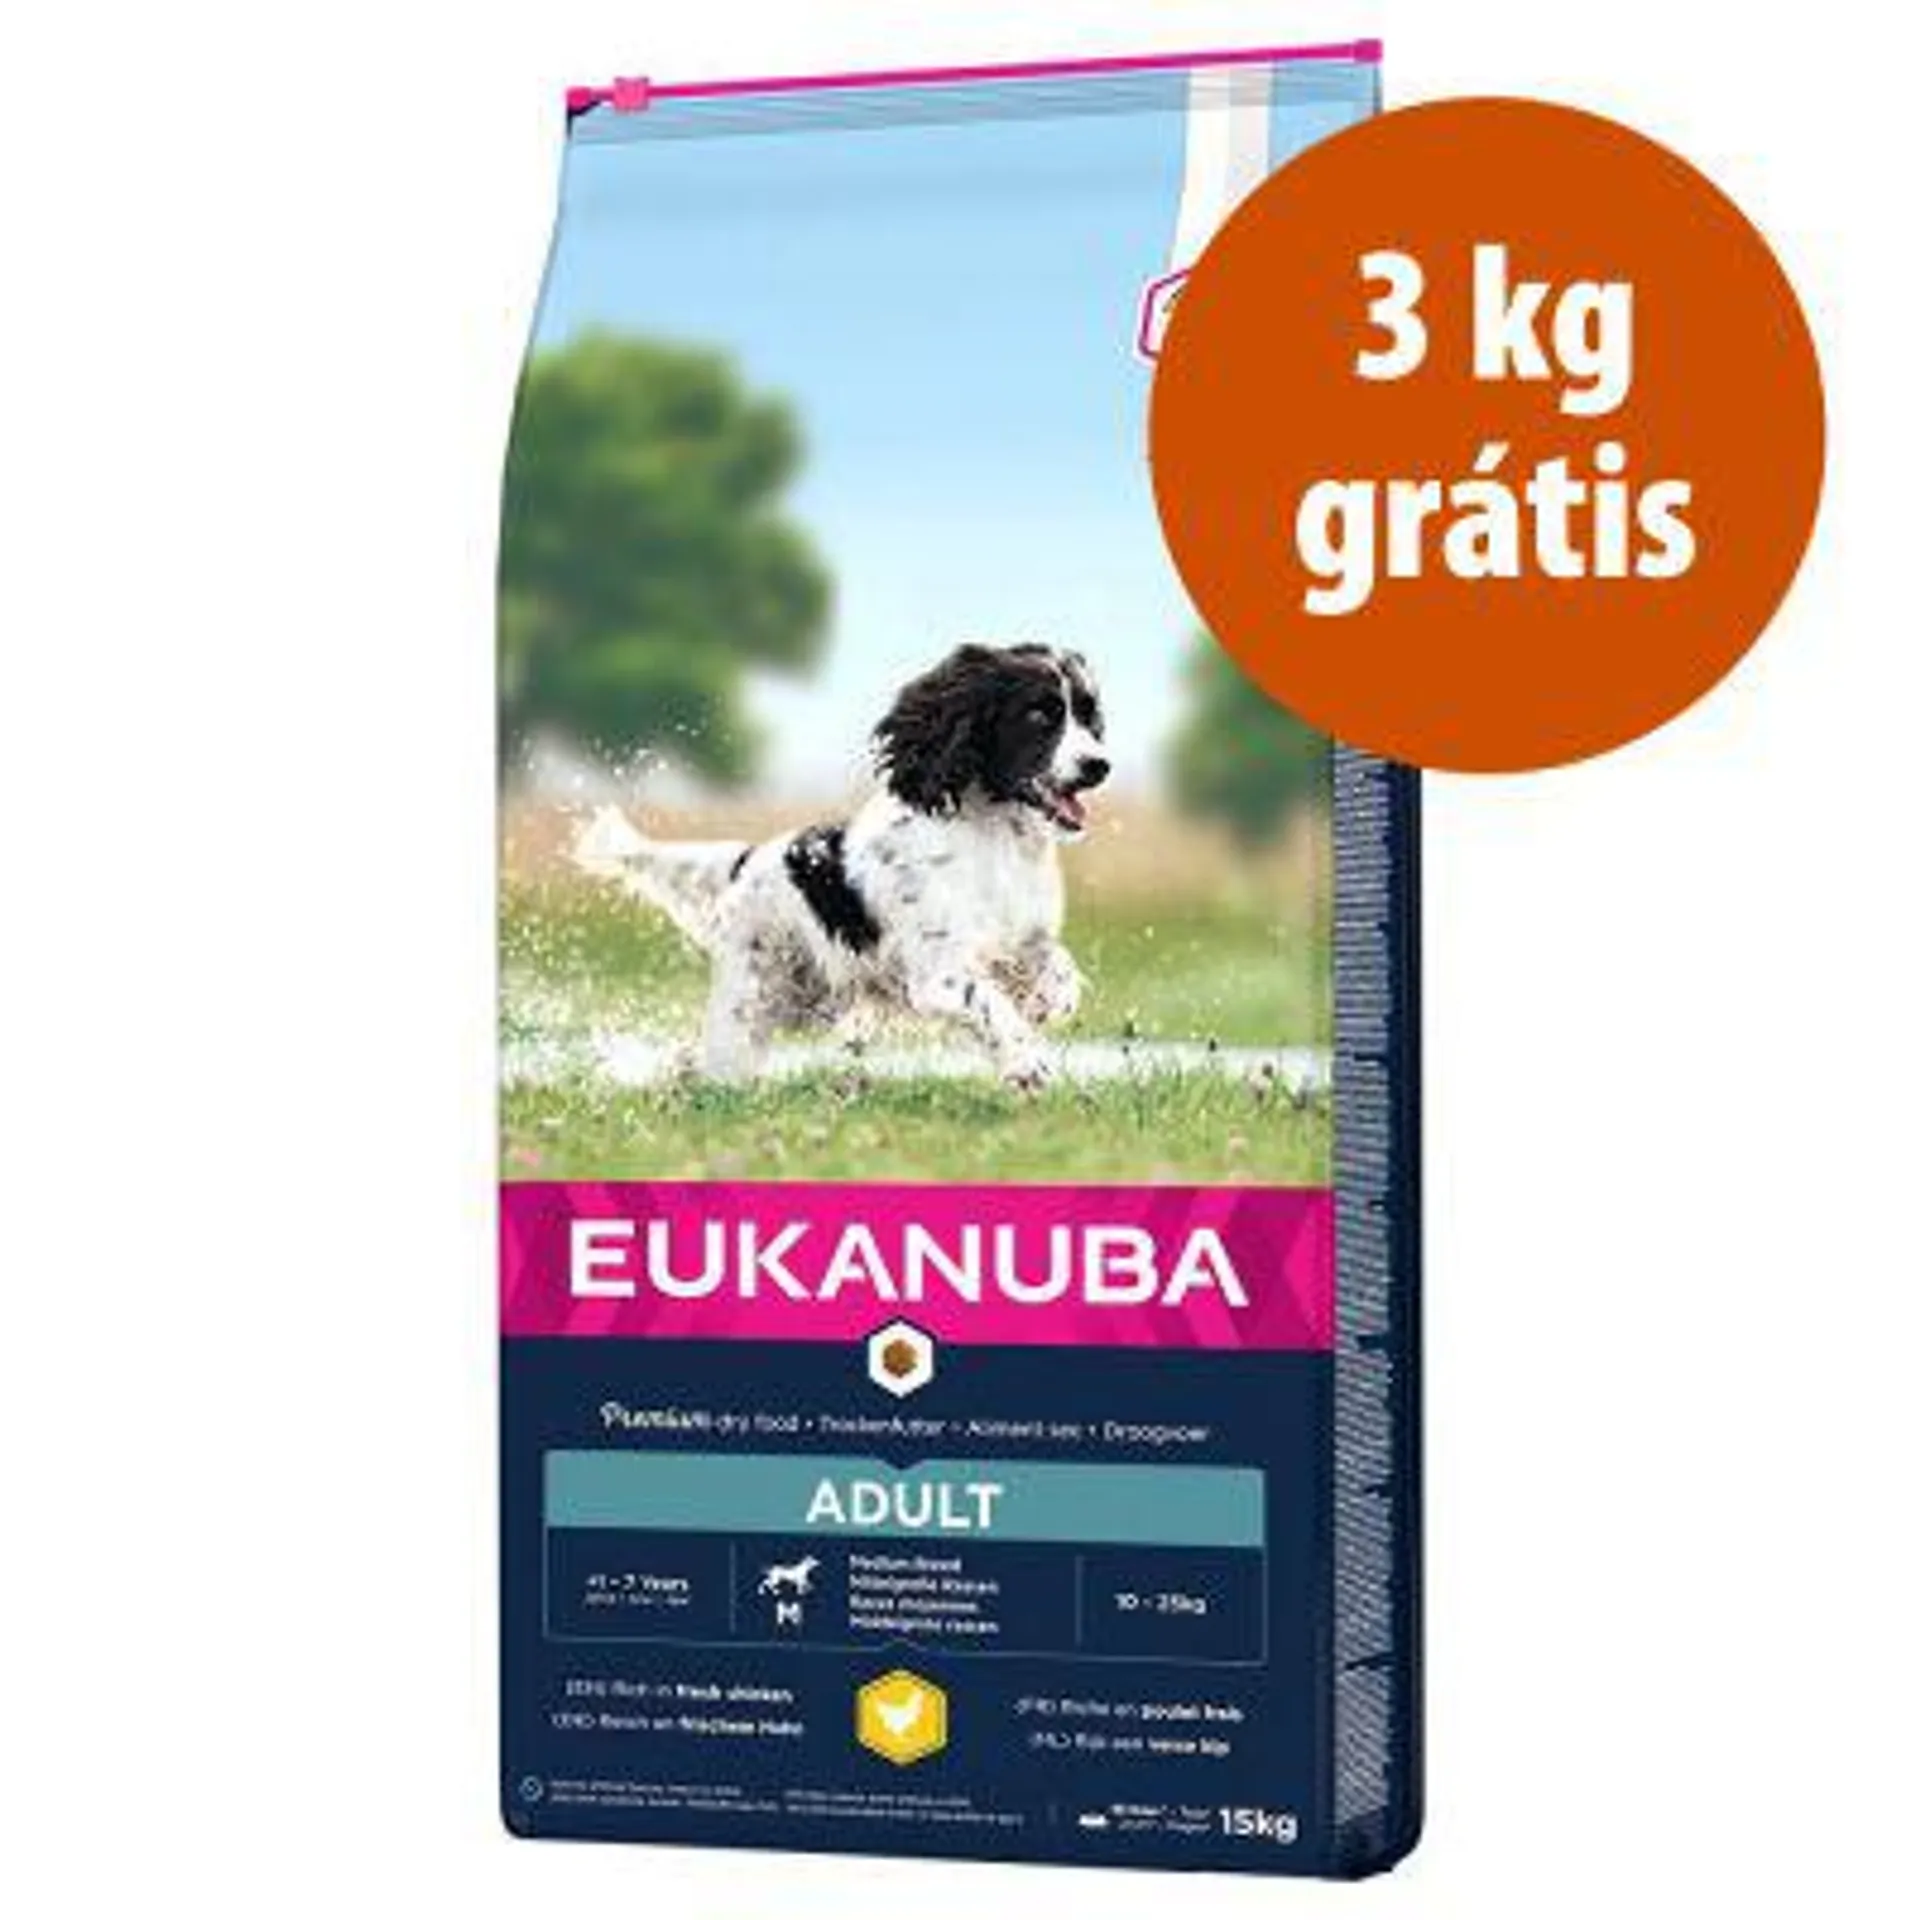 Eukanuba ração 18 kg em promoção: 15 kg + 3 kg grátis!